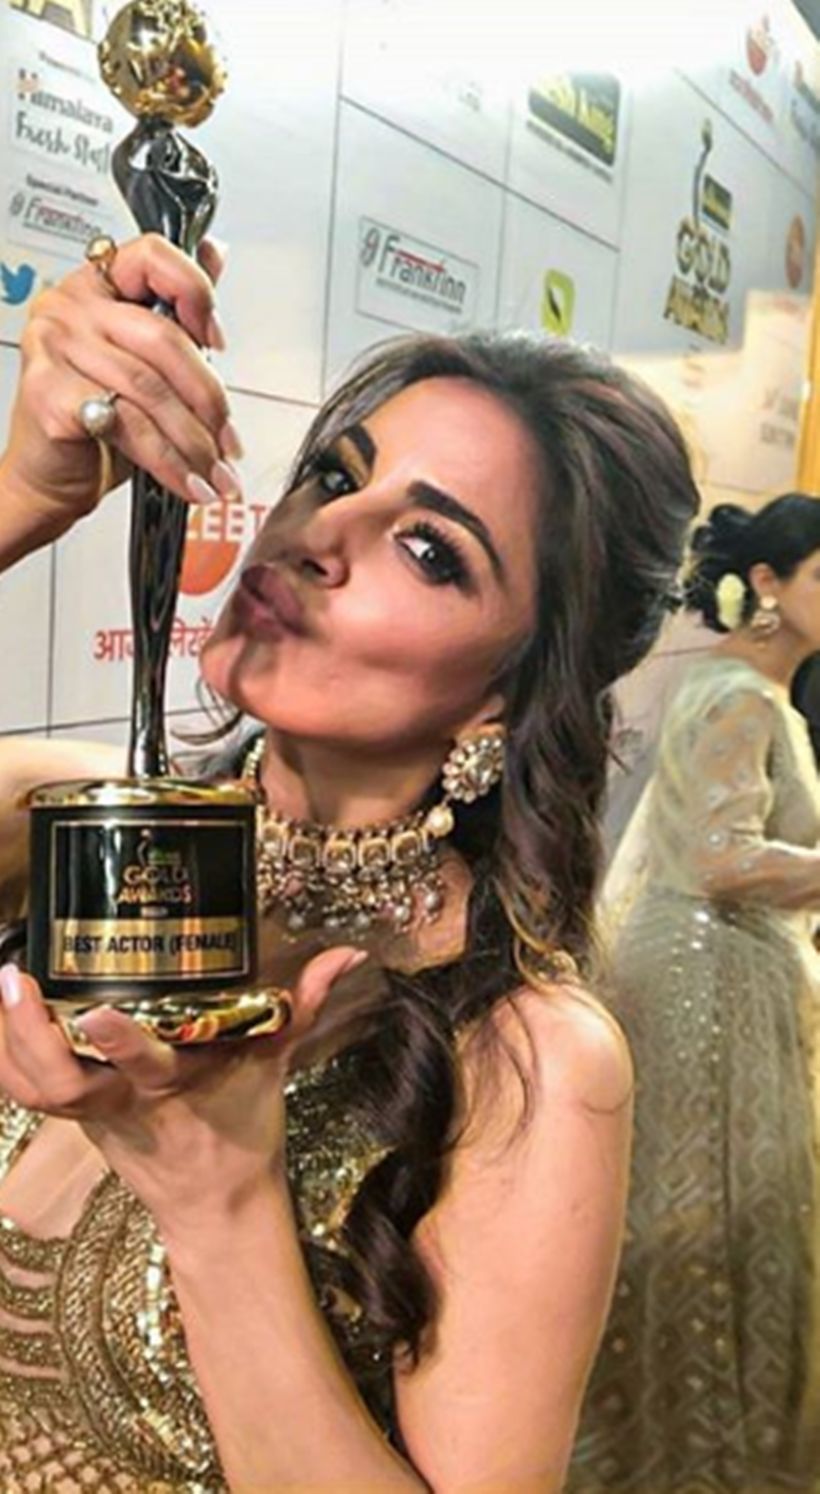 بہترین اداکار (خواتین) کے لئے زی سینے ایوارڈز 2018 کے ساتھ شردھا آریا